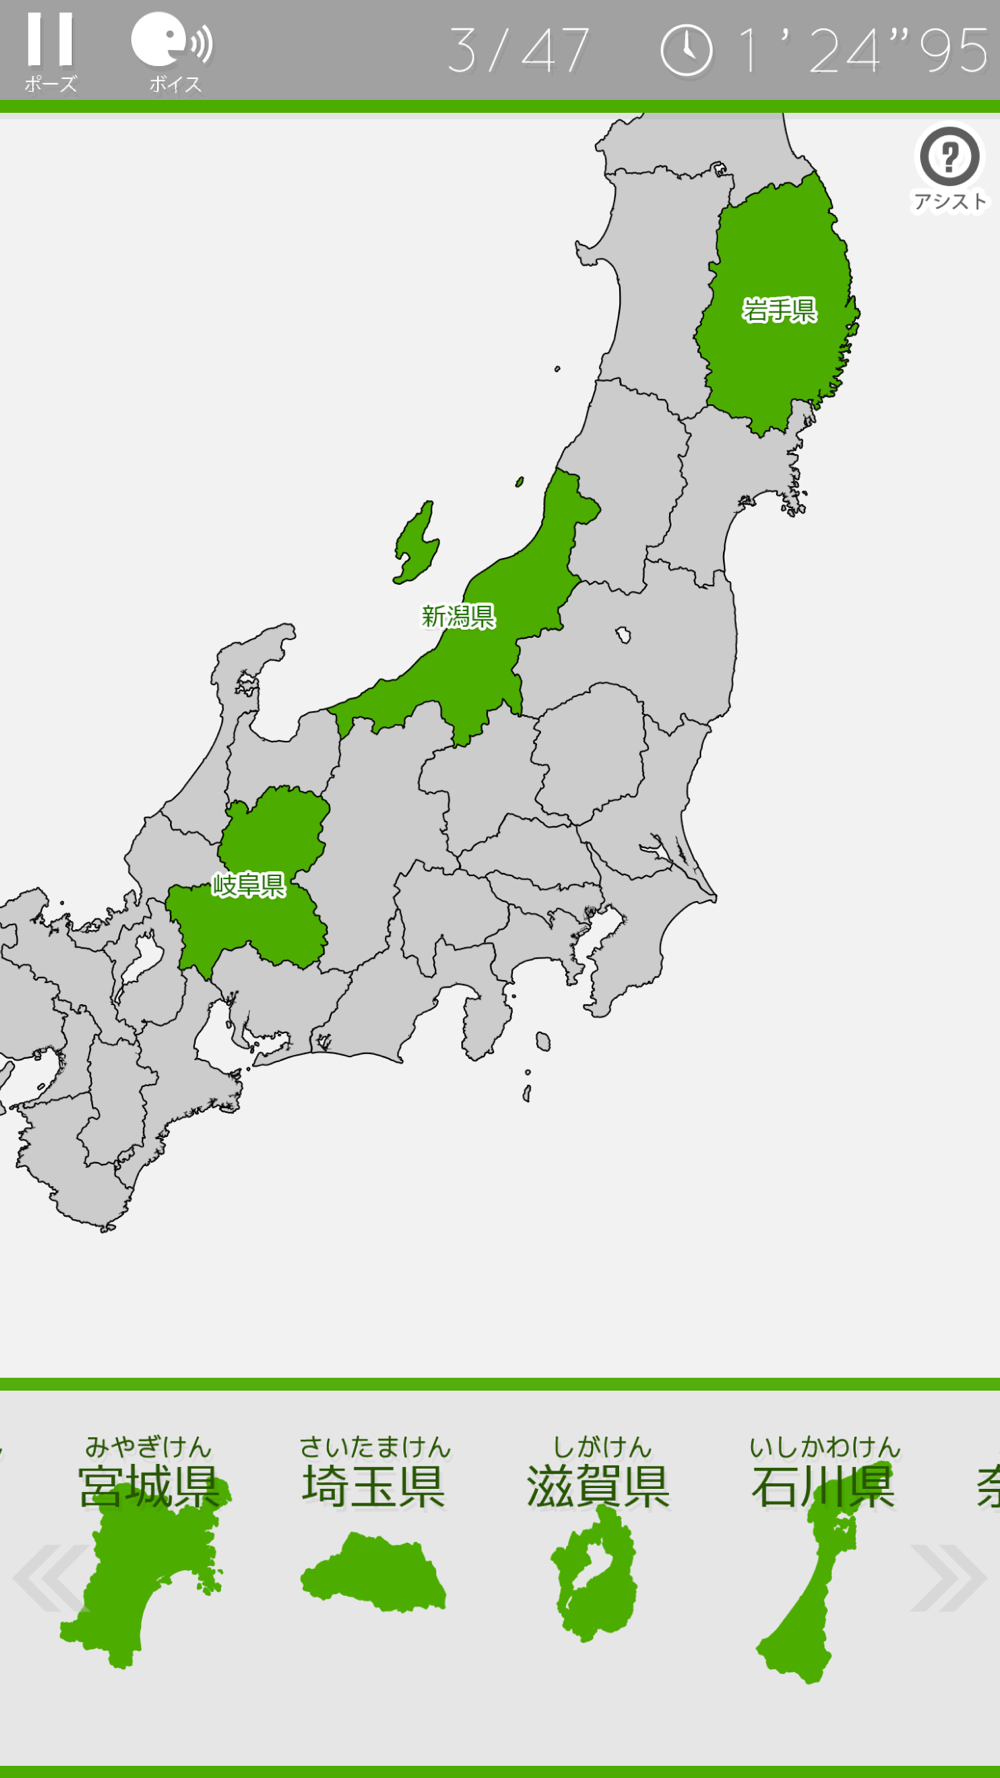 あそんでまなべる 日本地図パズル Free Download App For Iphone Steprimo Com